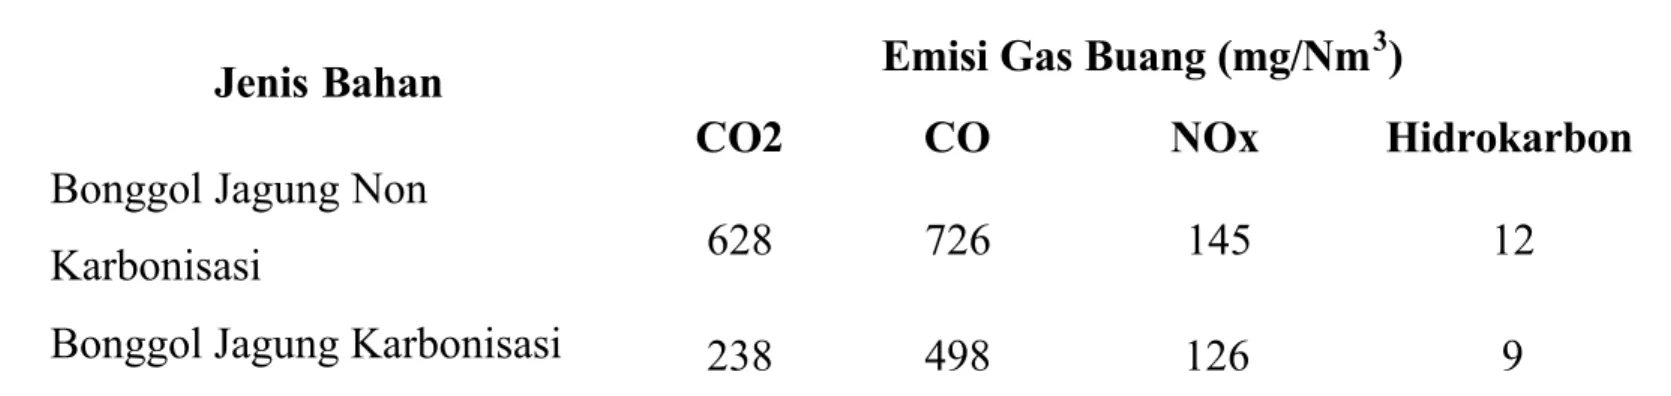 Tabel 2. Hasil Uji Emisi Briket dan Pembanding Lainnya Jenis Bahan Emisi Gas Buang (mg/Nm 3 )